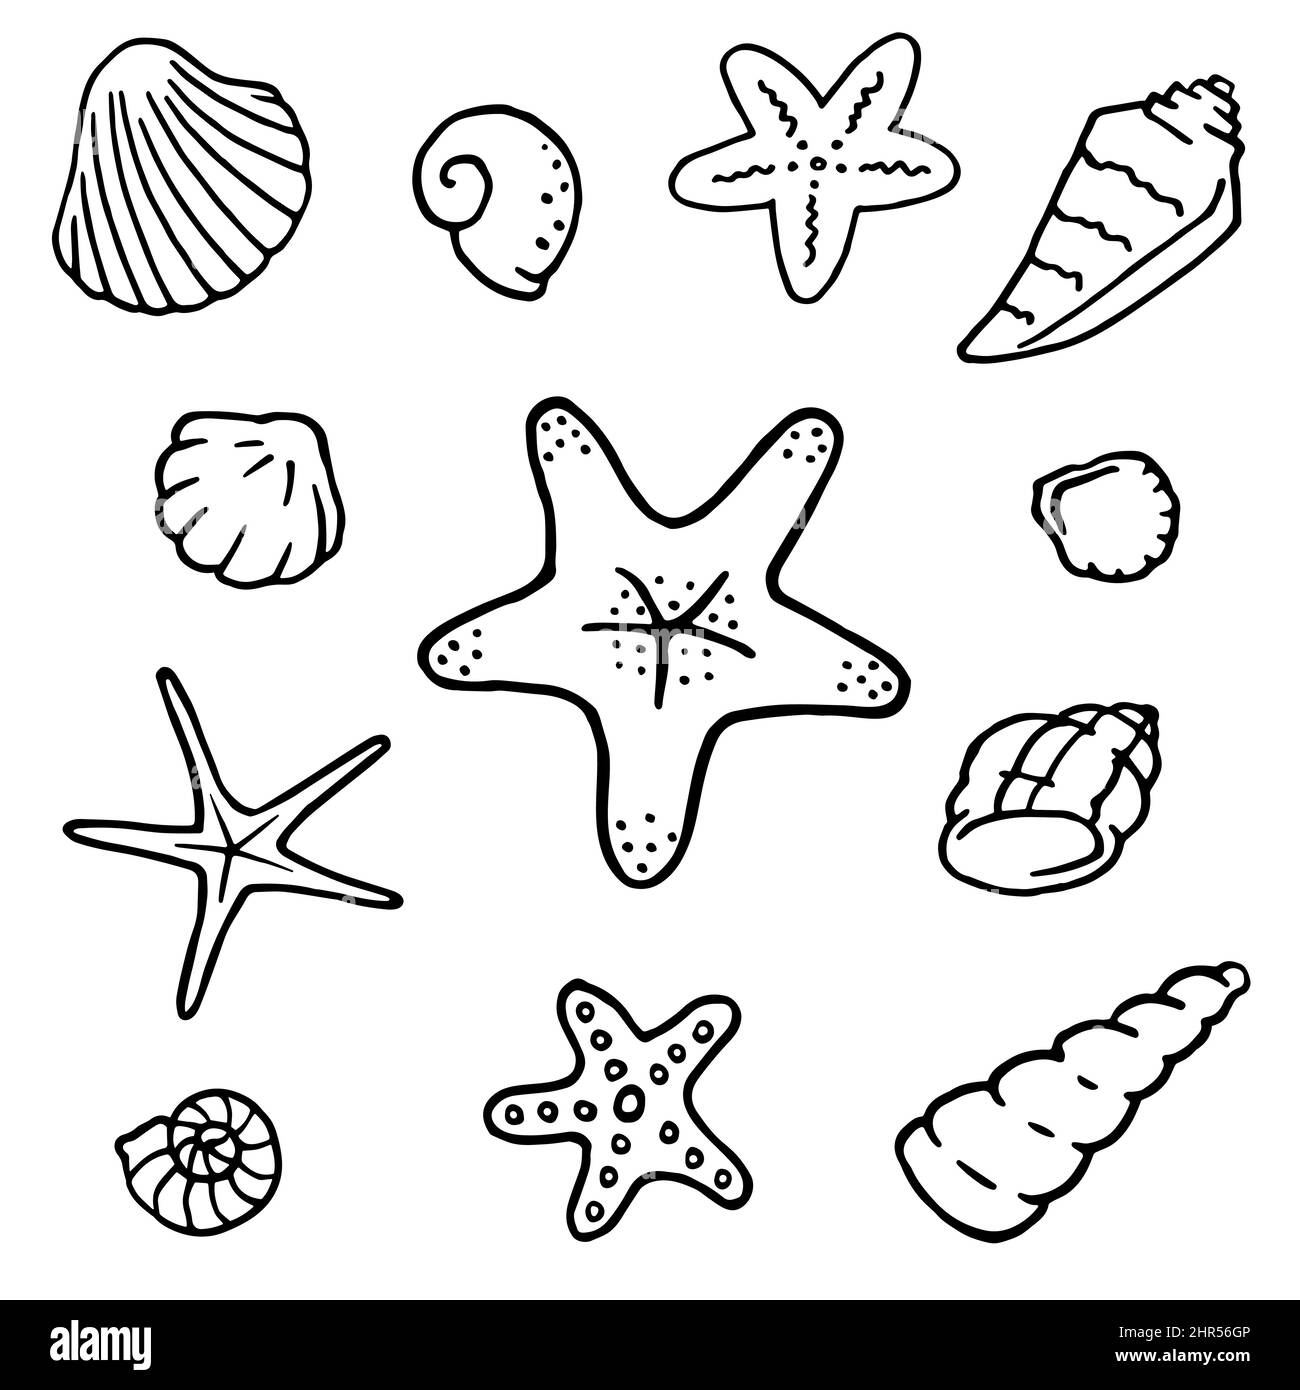 Estrellas de mar. Objeto aislado dibujado a mano en técnica gráfica.  Ilustración vectorial para decoración y diseño de verano, náutica y playa  Imagen Vector de stock - Alamy